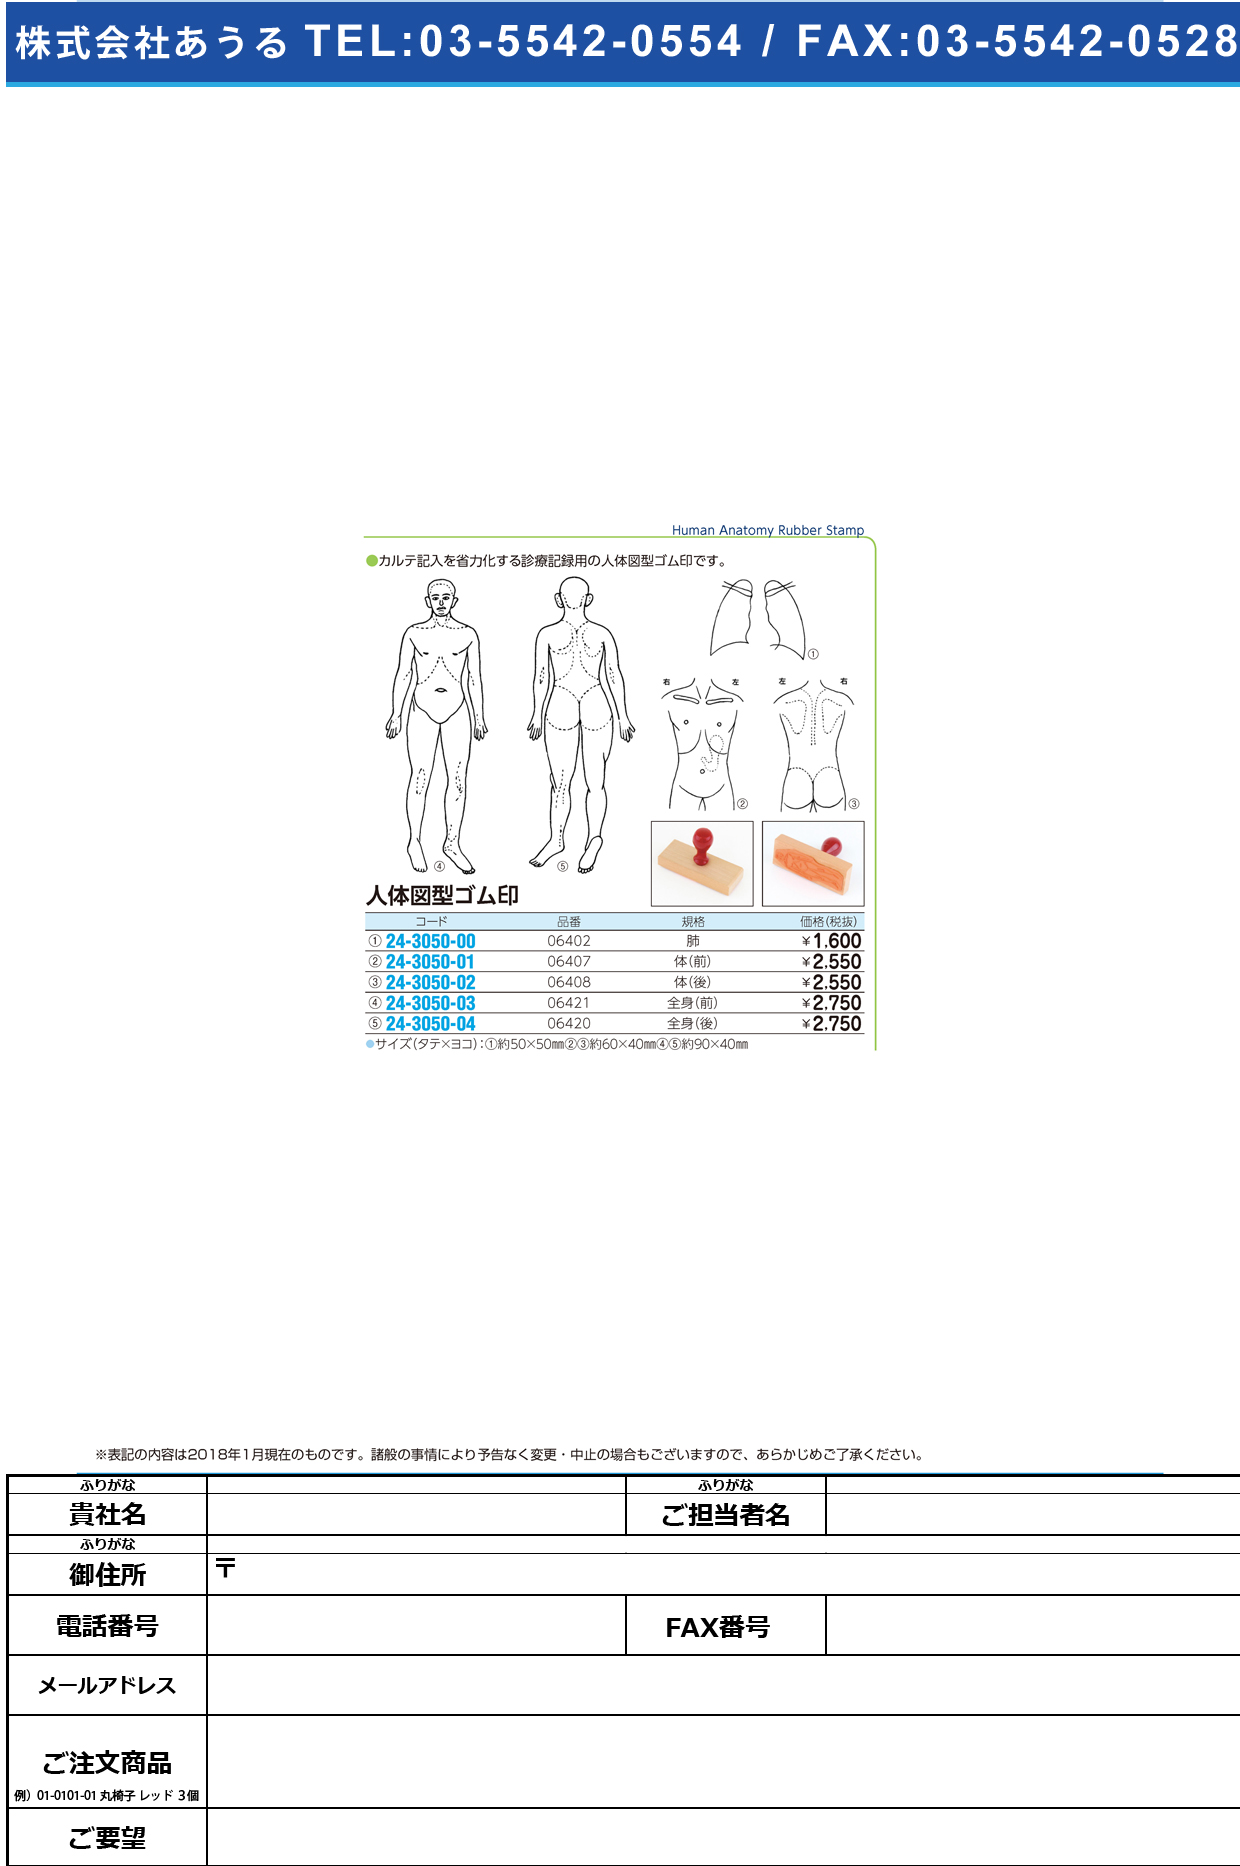 (24-3050-02)人体図型ゴム印（体・後向き） 06408 ｼﾞﾝﾀｲｽﾞｹｲｺﾞﾑｲﾝ(ｶﾗﾀﾞ【1個単位】【2019年カタログ商品】